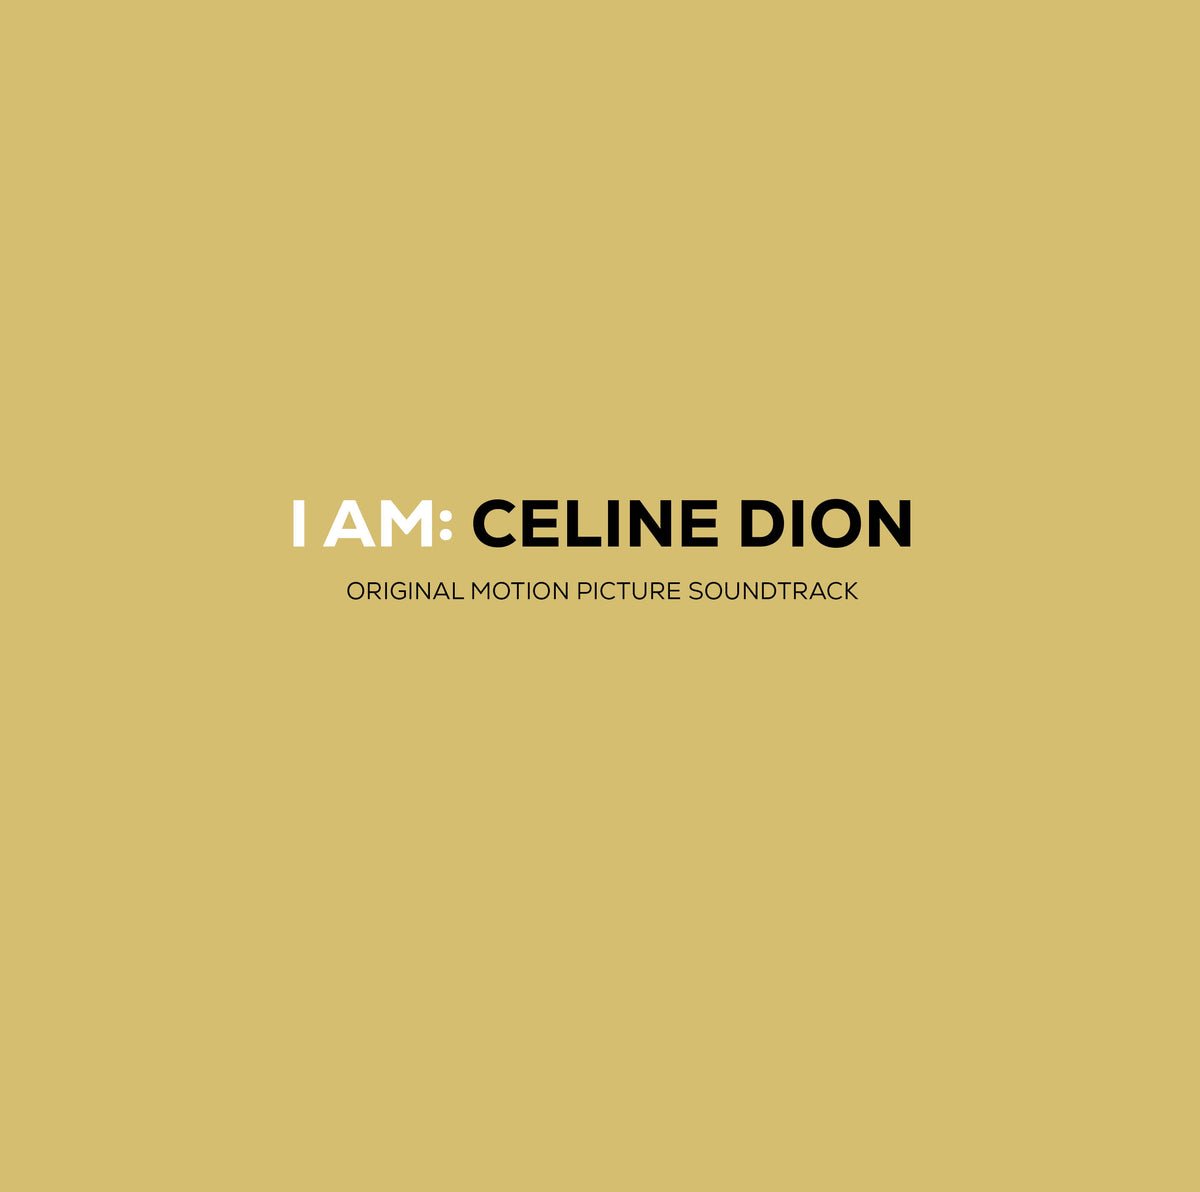 CD Shop - DION, CELINE I AM: CELINE DION (Original Motion Picture Soundtrack)